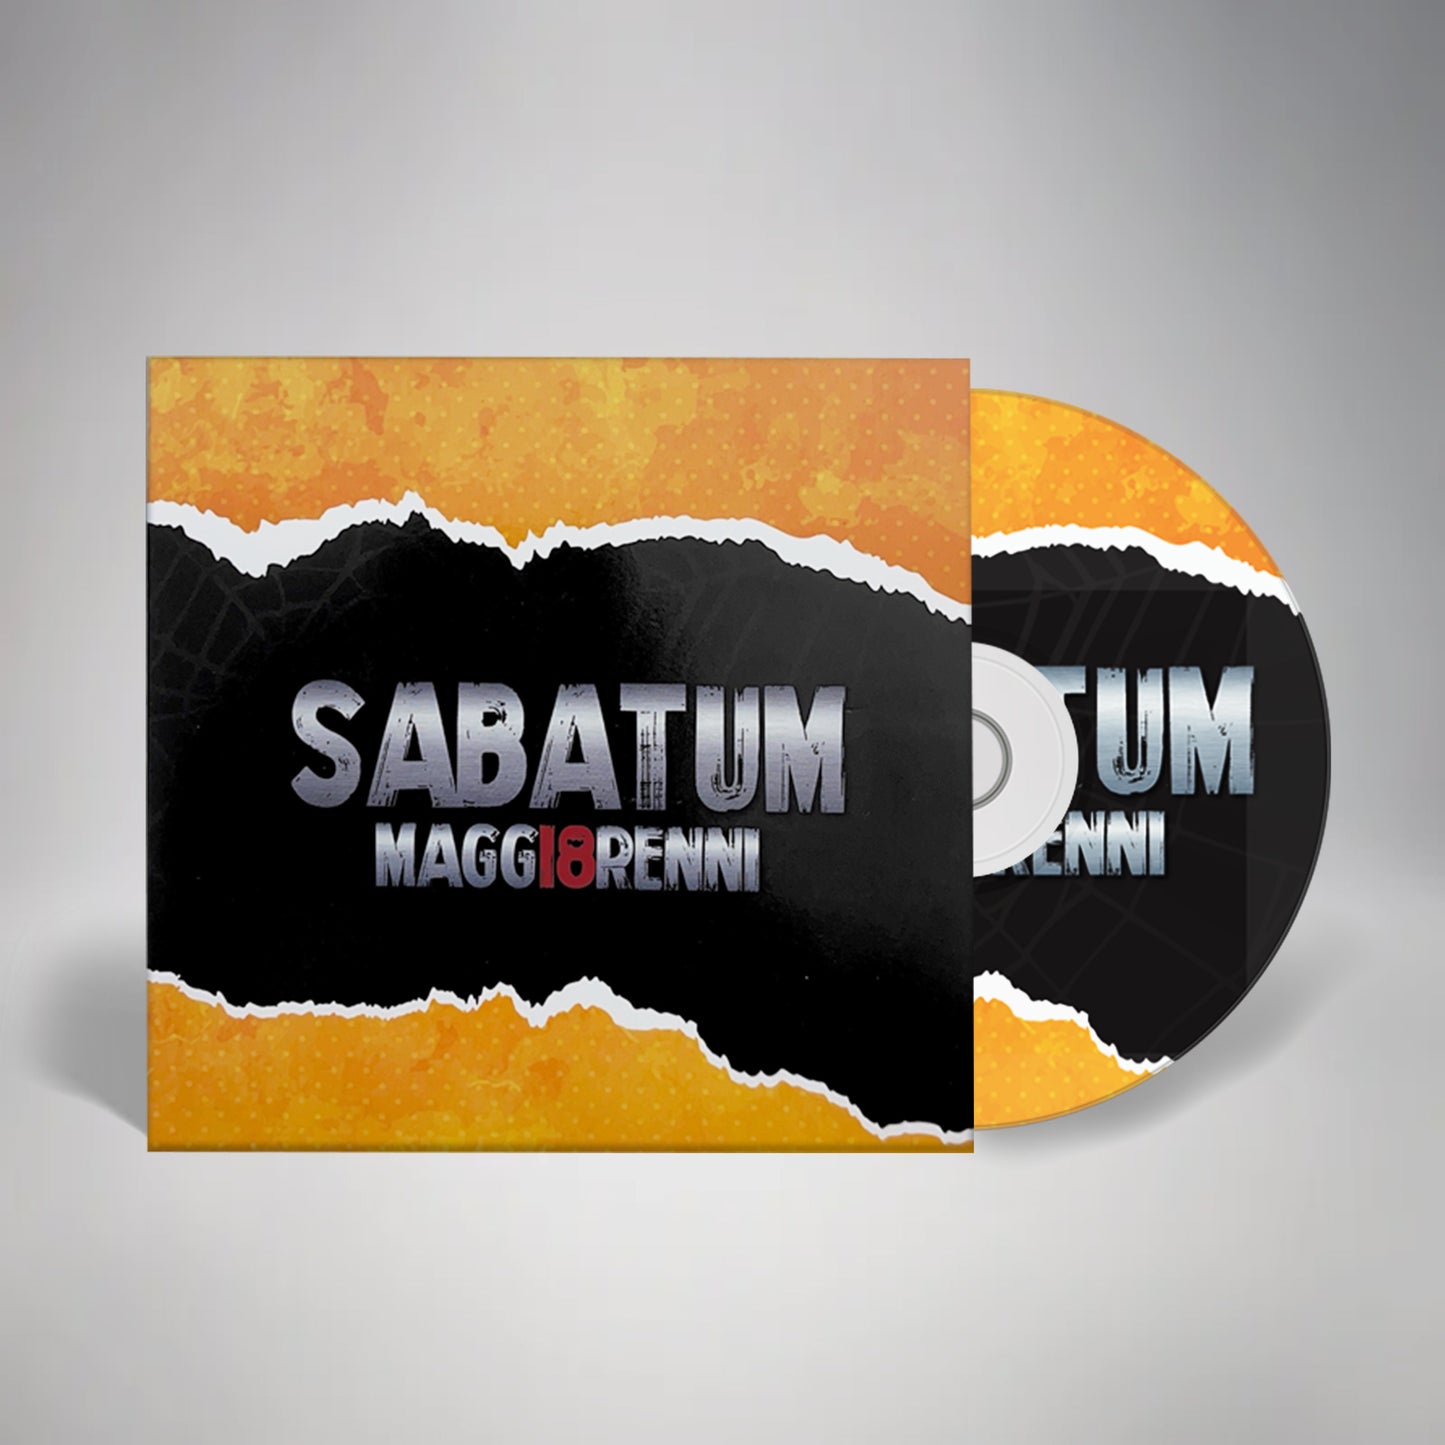 CD Sabatum Quartet "MAGG18RENNI"